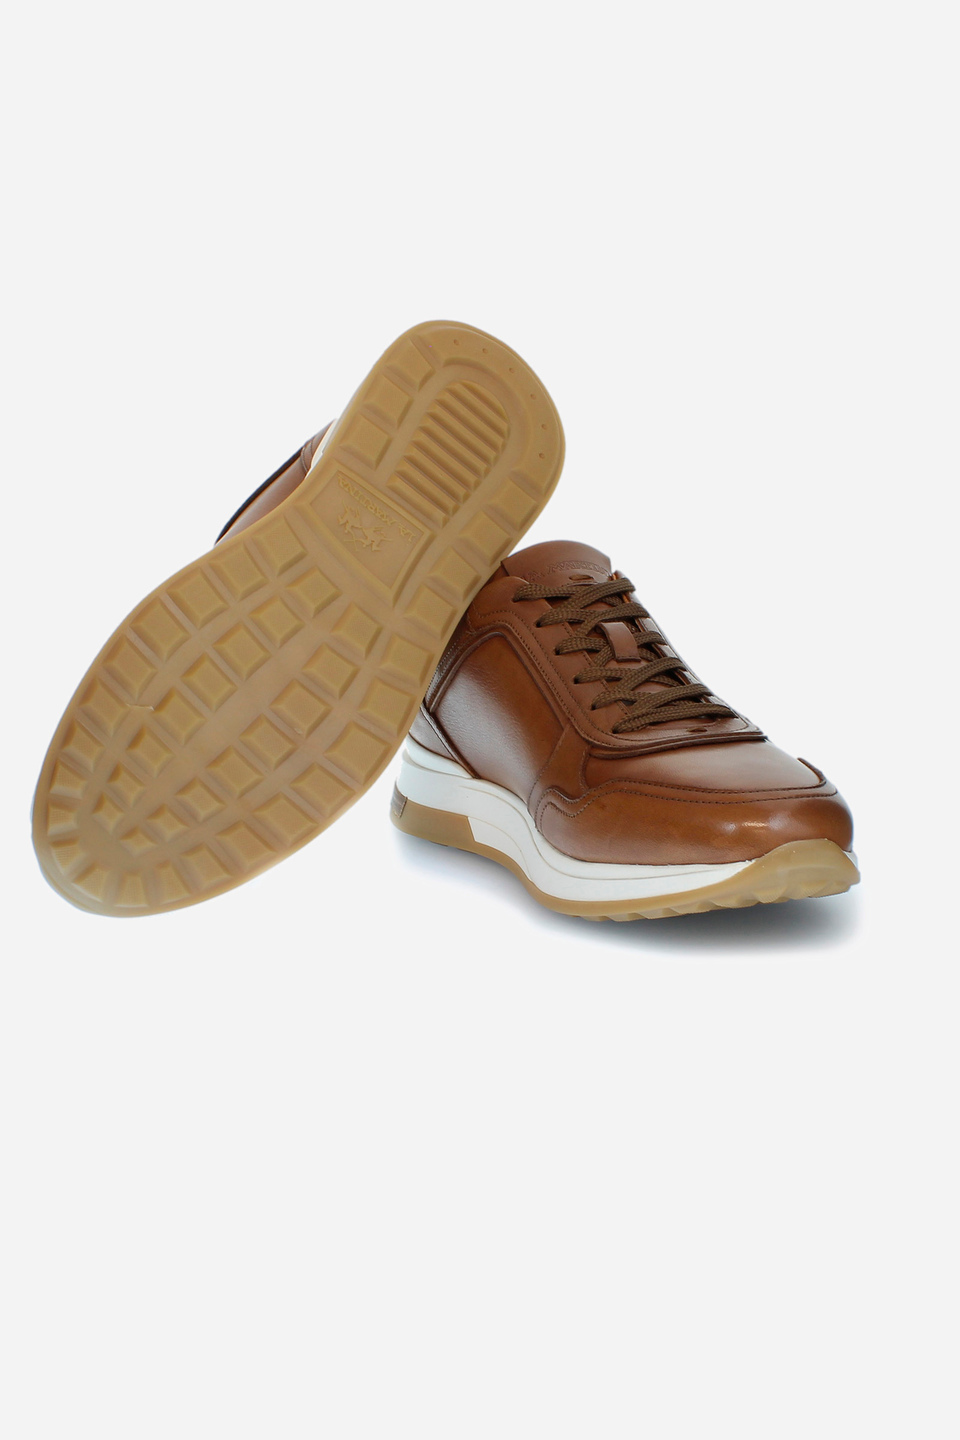 Sneaker da uomo con suola rialzata | La Martina - Official Online Shop